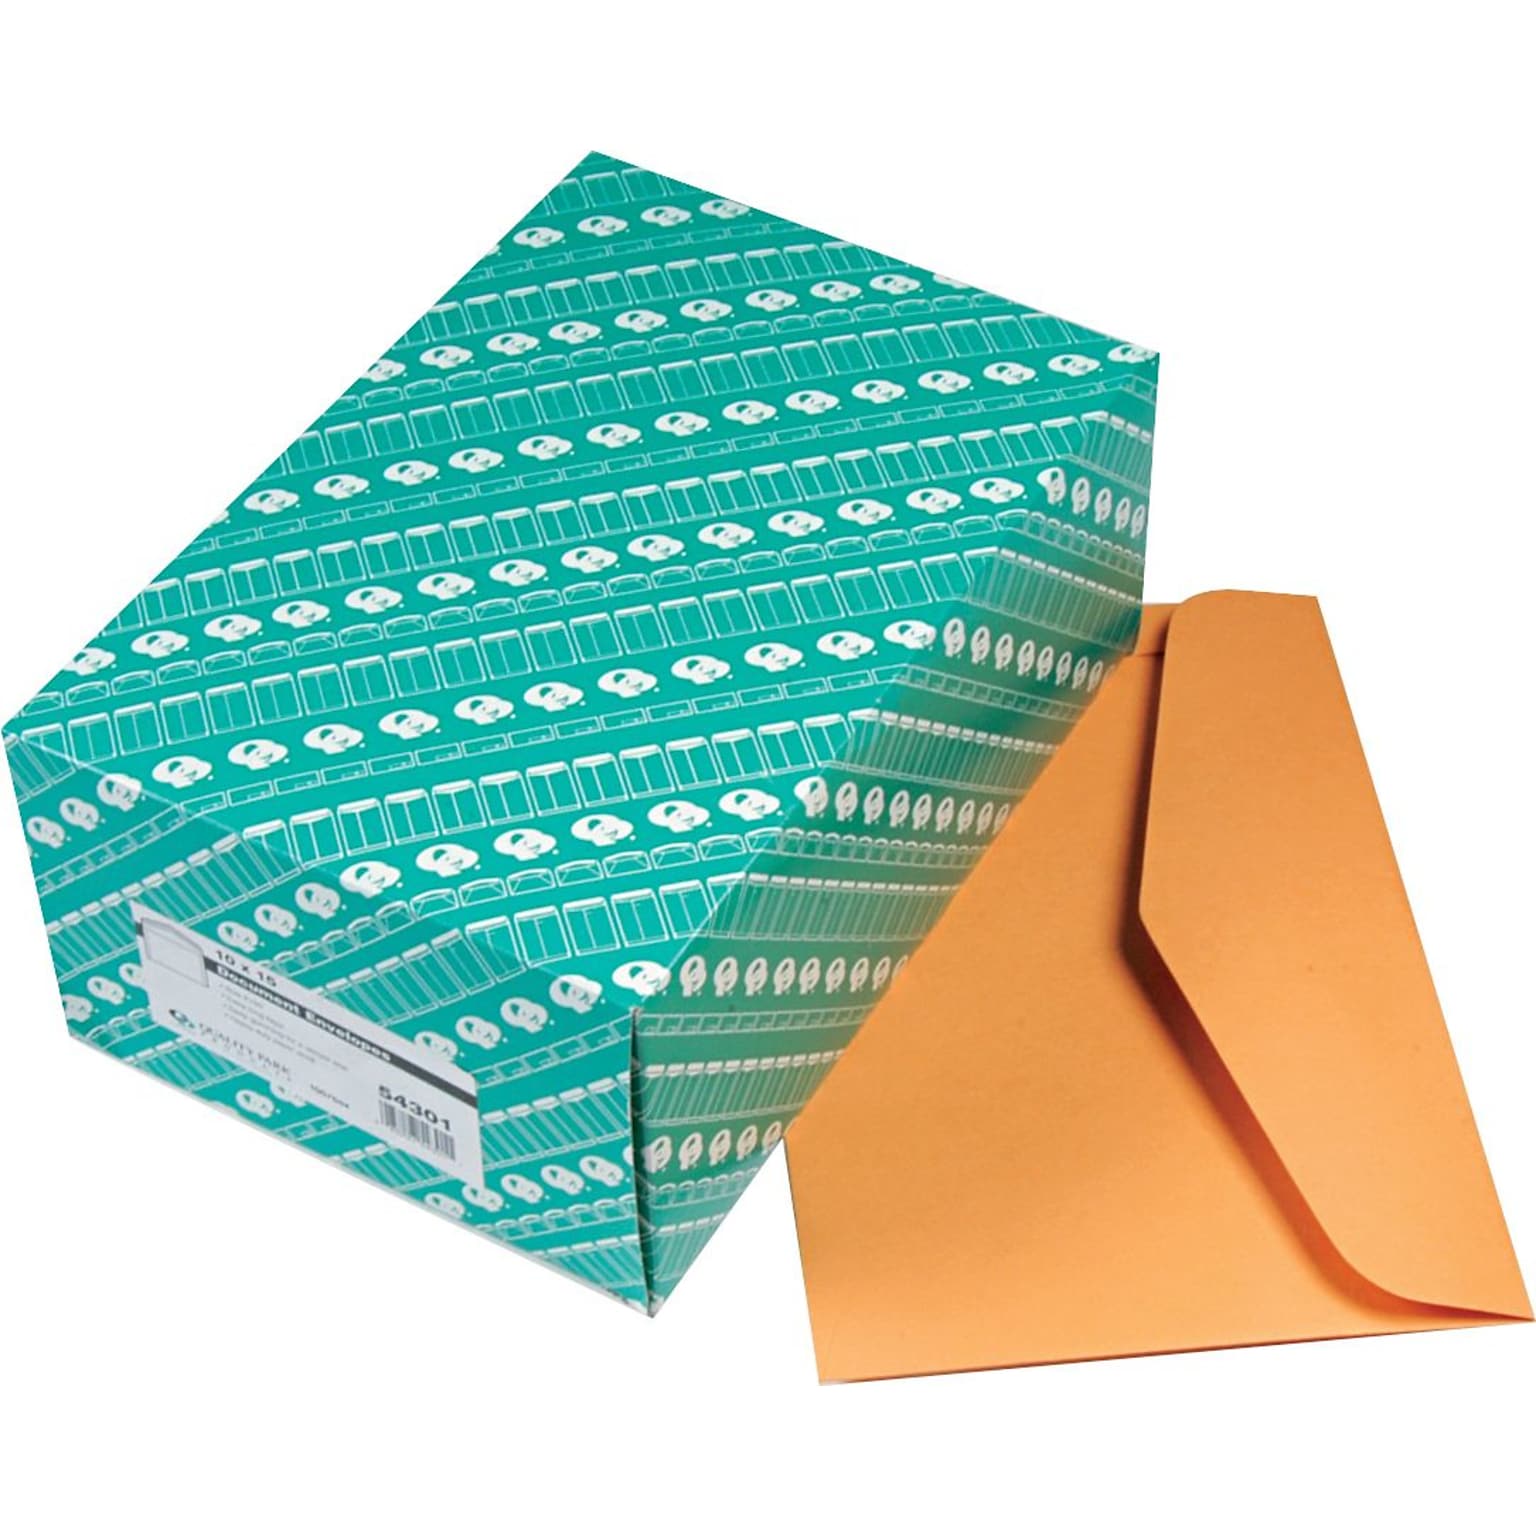 Quality Park Gummed Catalog Envelope, 10 x 15, Light Kraft, 100/Box (54301)